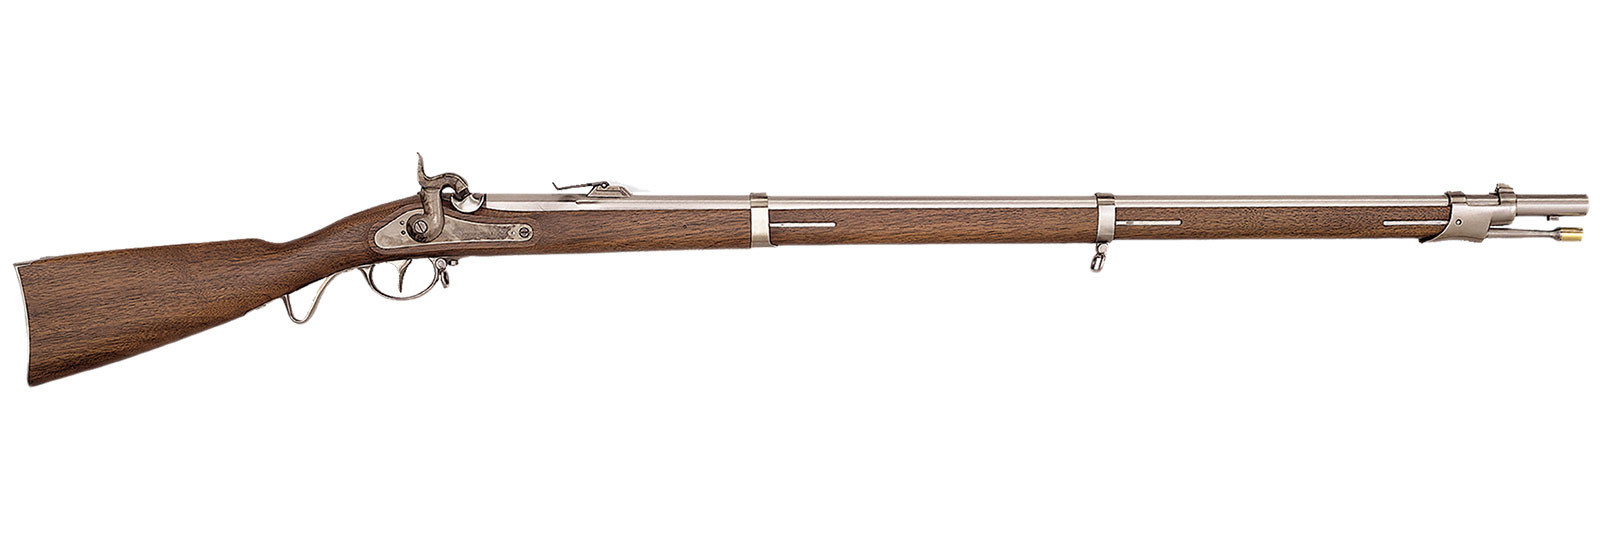 1857 Wurttembergischen Rifle